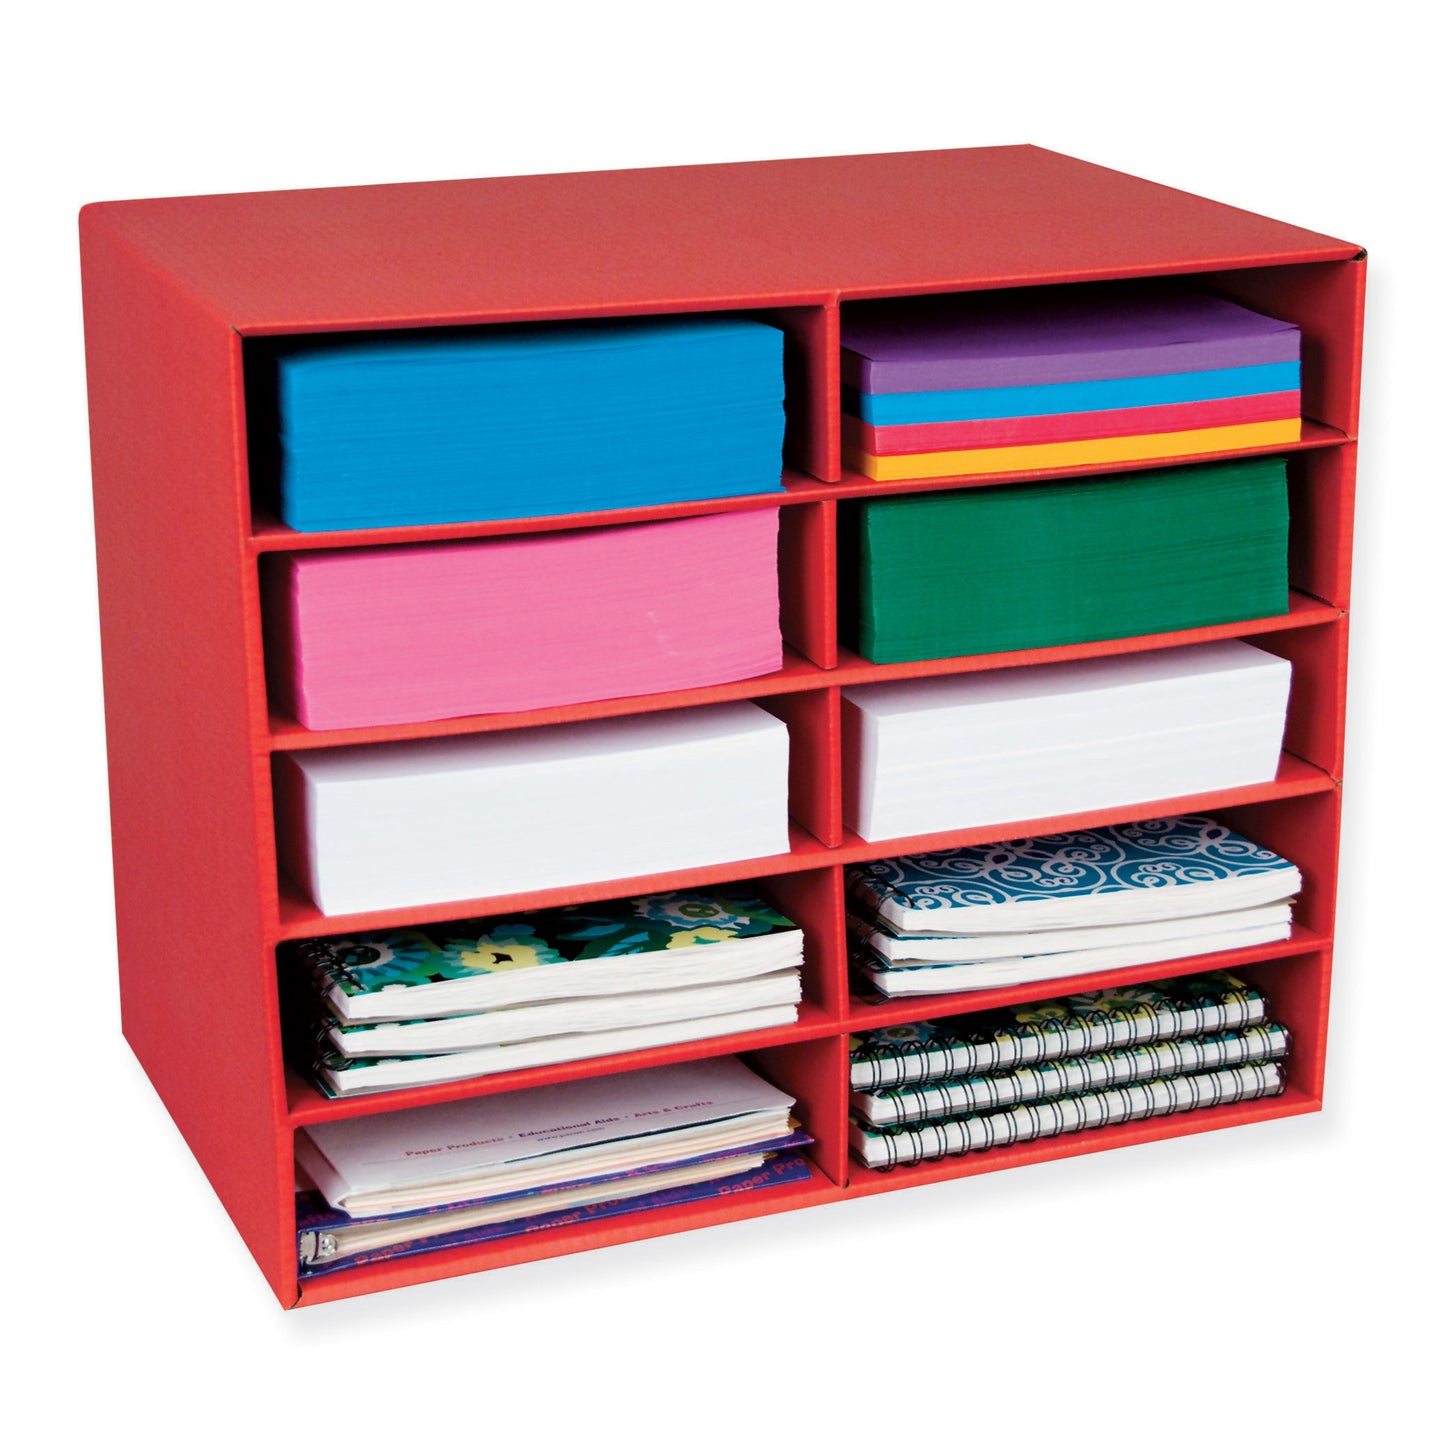 10-Shelf Organizer, Red, 17"H x 21"W x 12-7/8"D, 1 Organizer